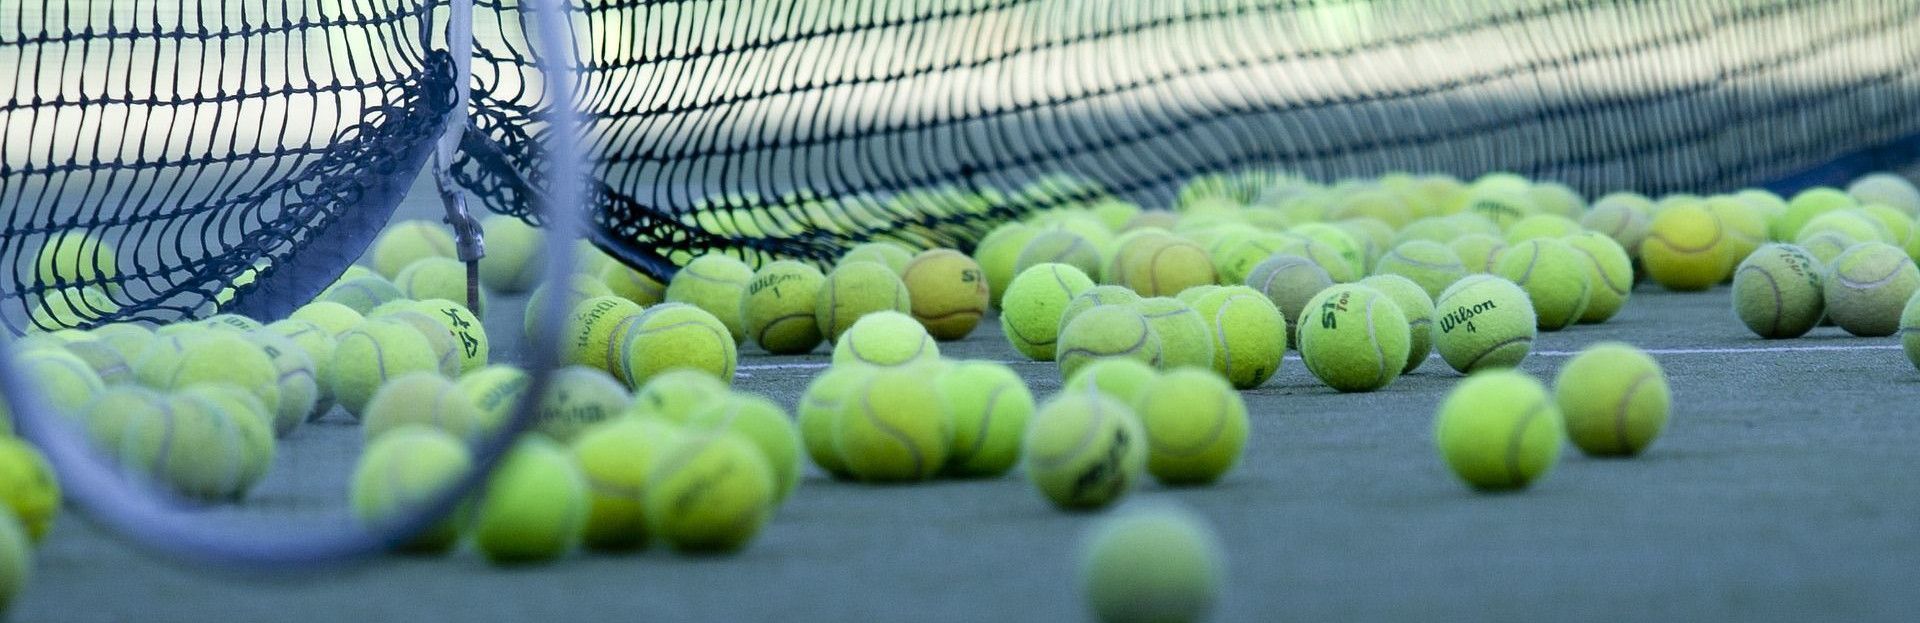 Spielen Sie Tennis am Schiermonnikoog